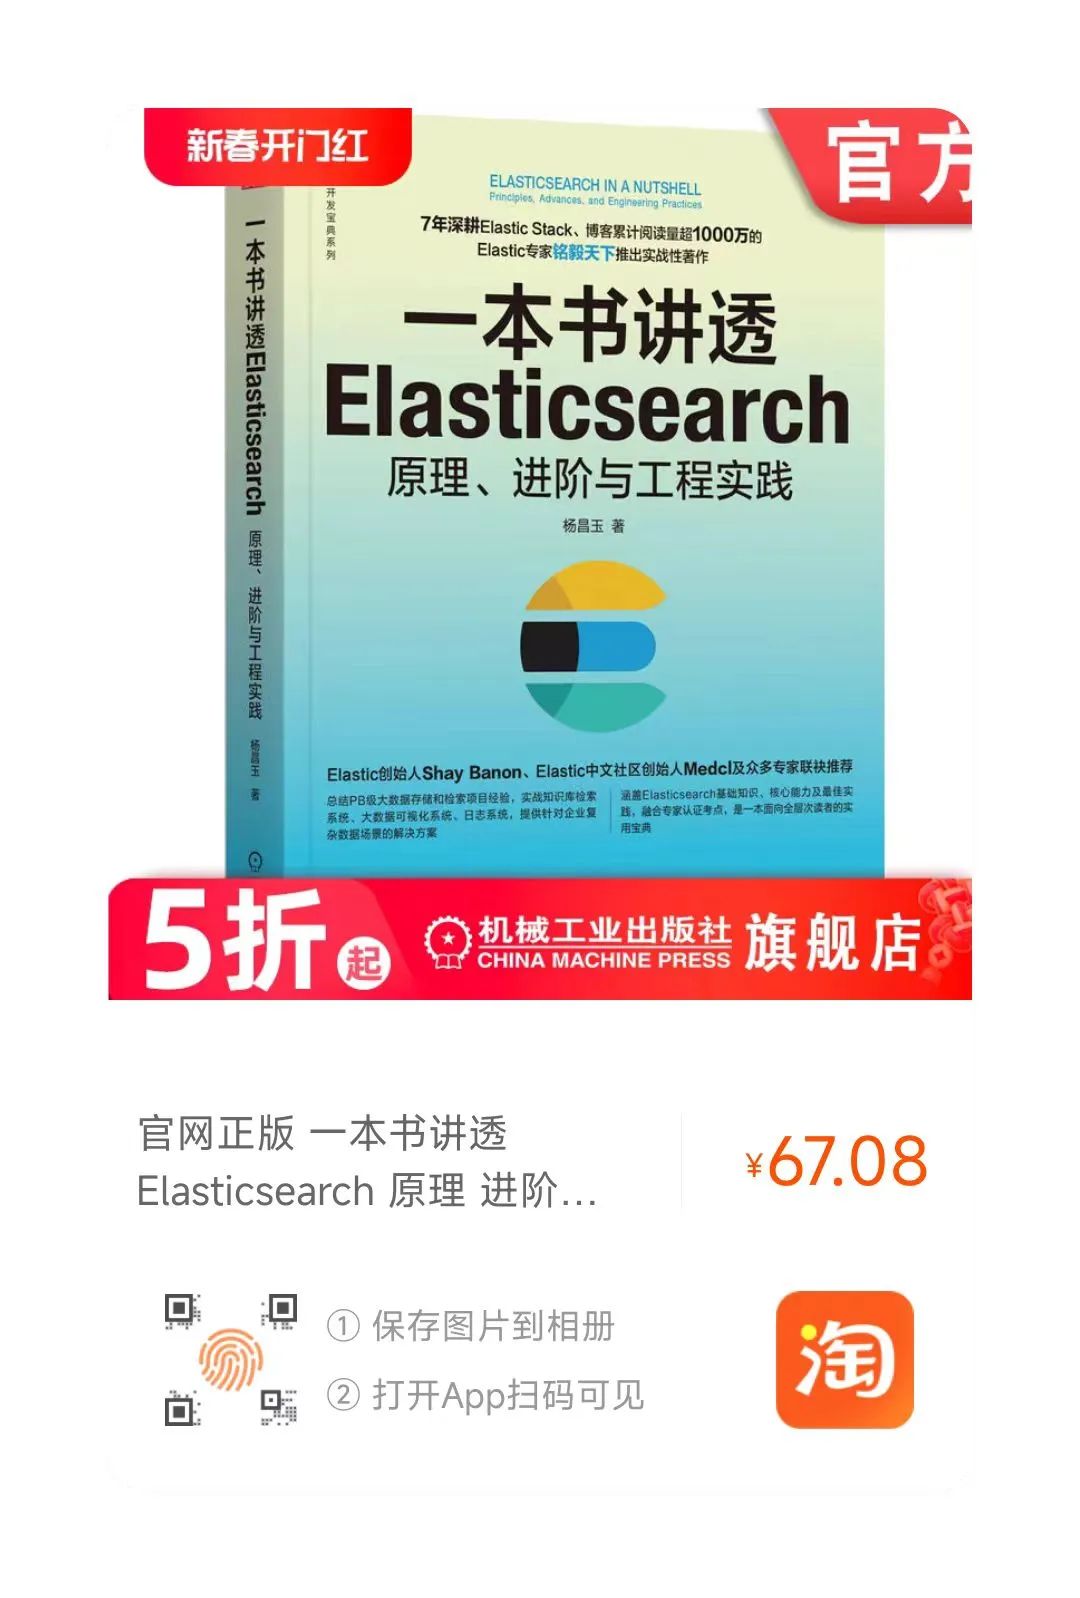 重磅 | Elasticsearch 智能知识问答上线了